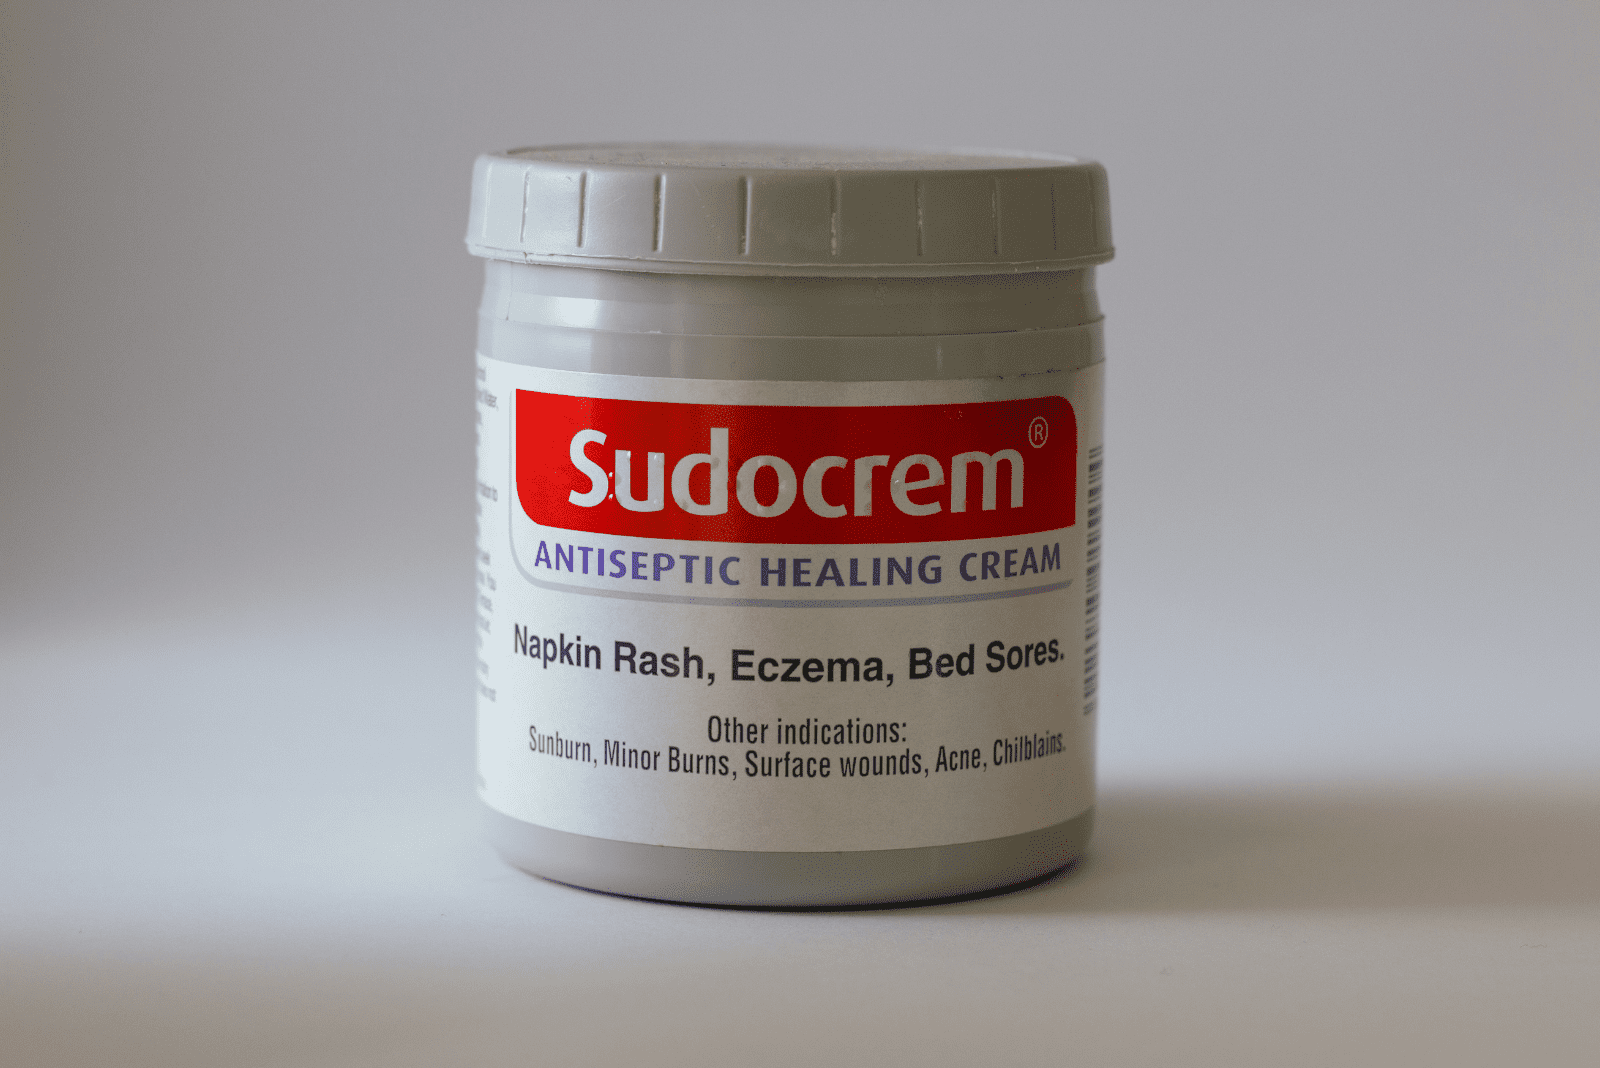 Sudocrem cream in a white box